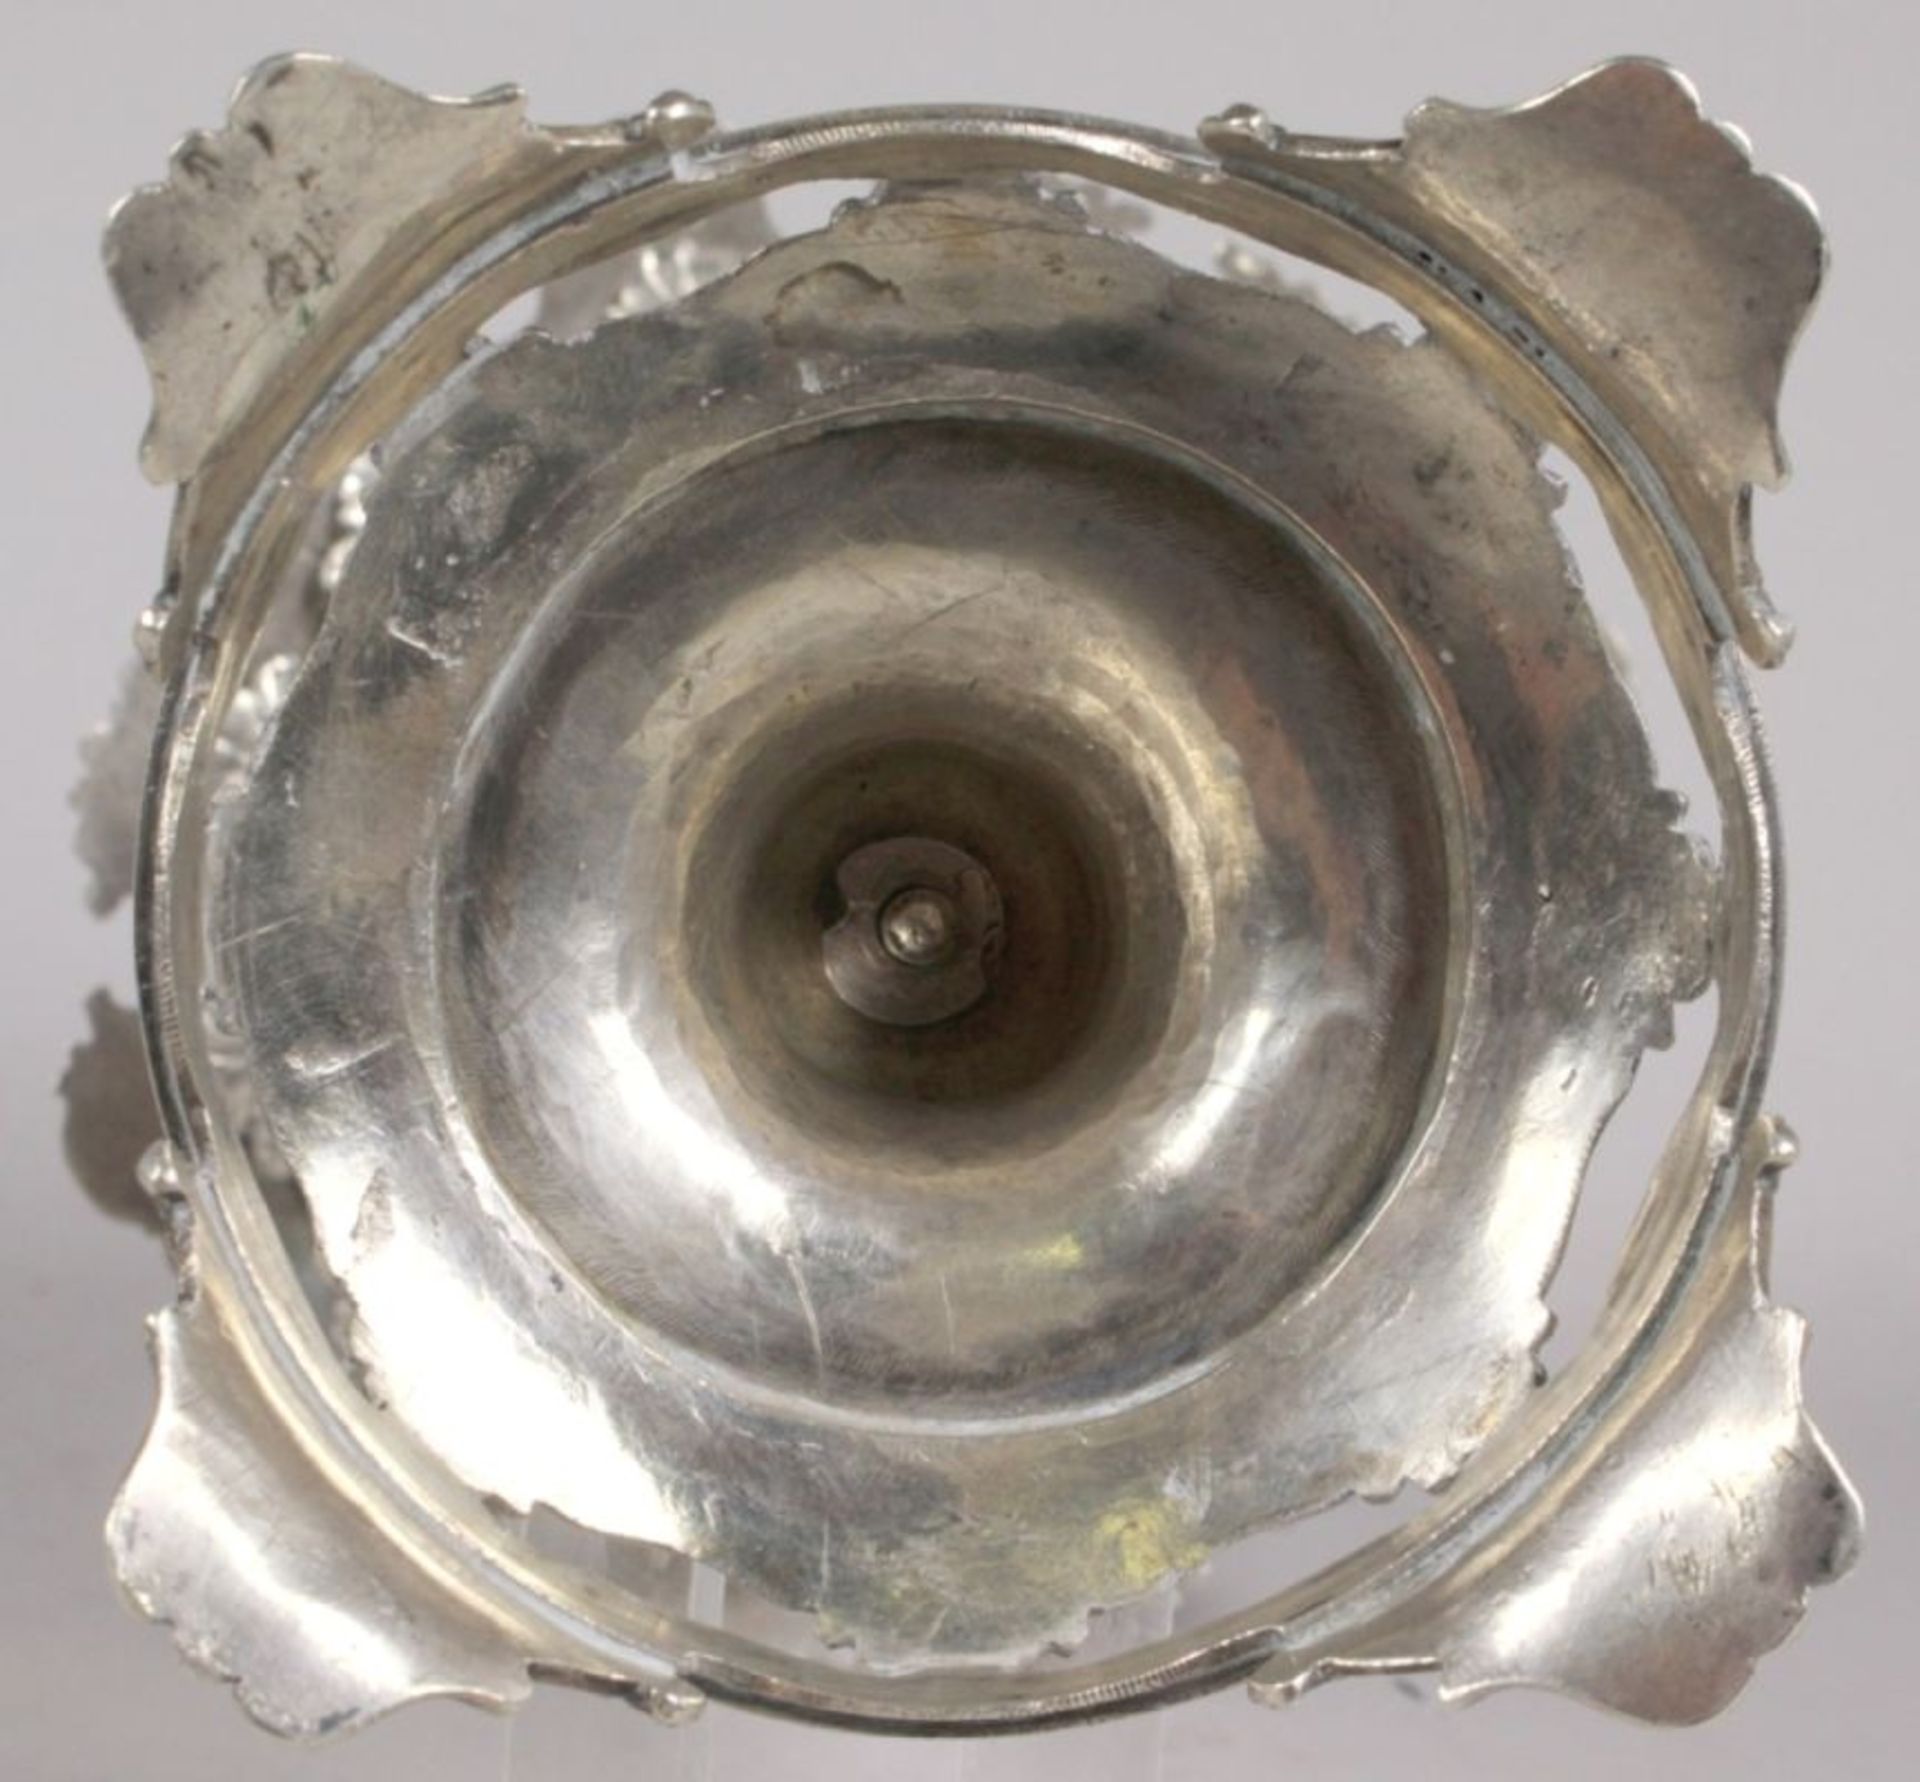 Zuckerschale, unleserlich gepunzt, Mitte 19. Jh., Silber, runder Stand mit geschweiftenFüßen, g - Bild 4 aus 4